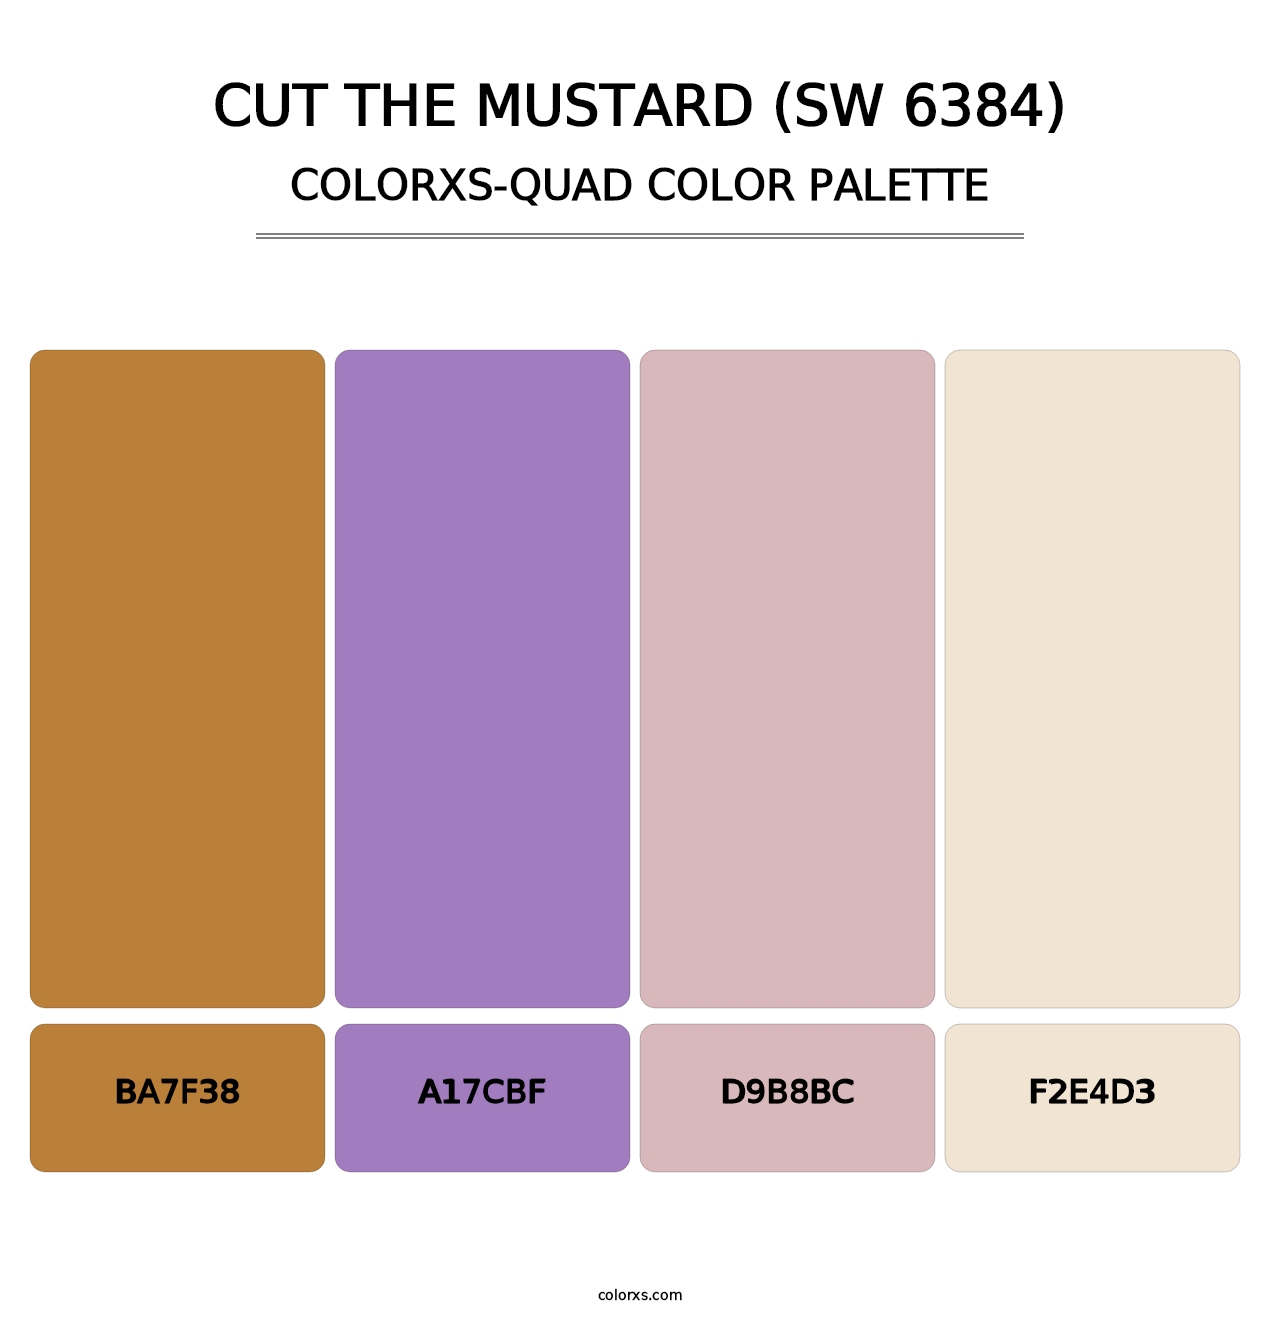 Cut the Mustard (SW 6384) - Colorxs Quad Palette